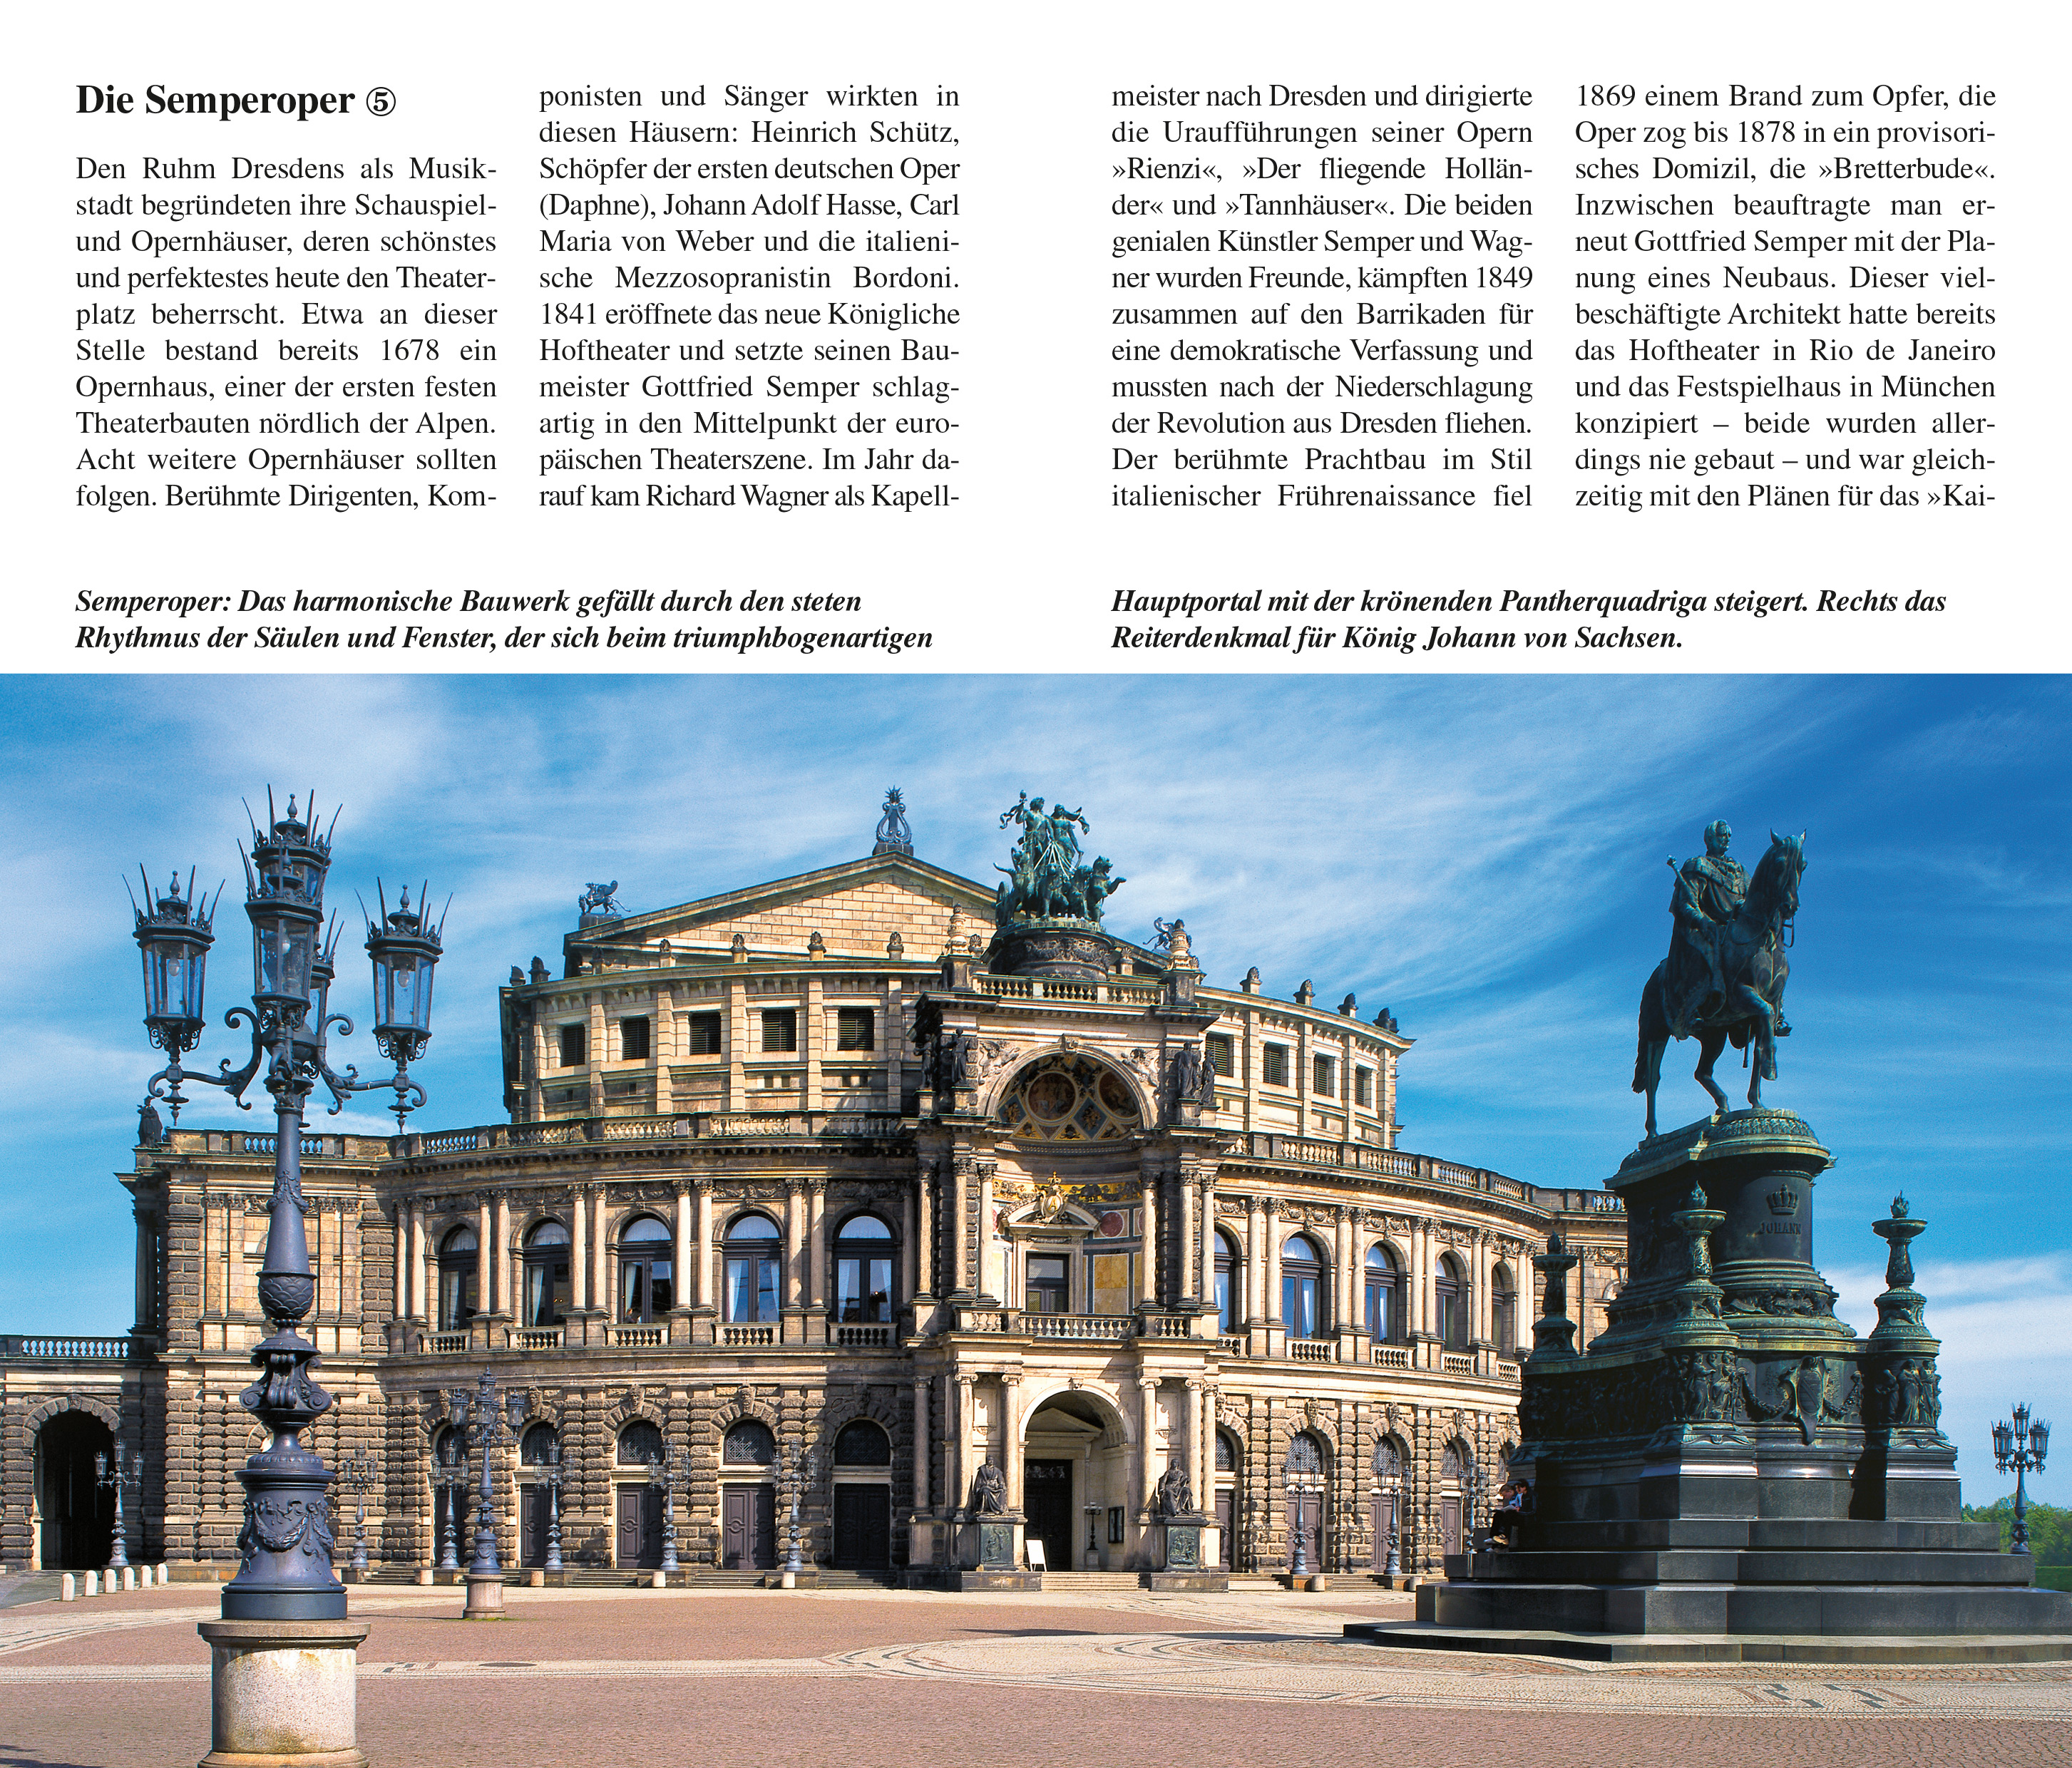 Stadtführer Dresden – Die Sächsische Residenz (deutsch)